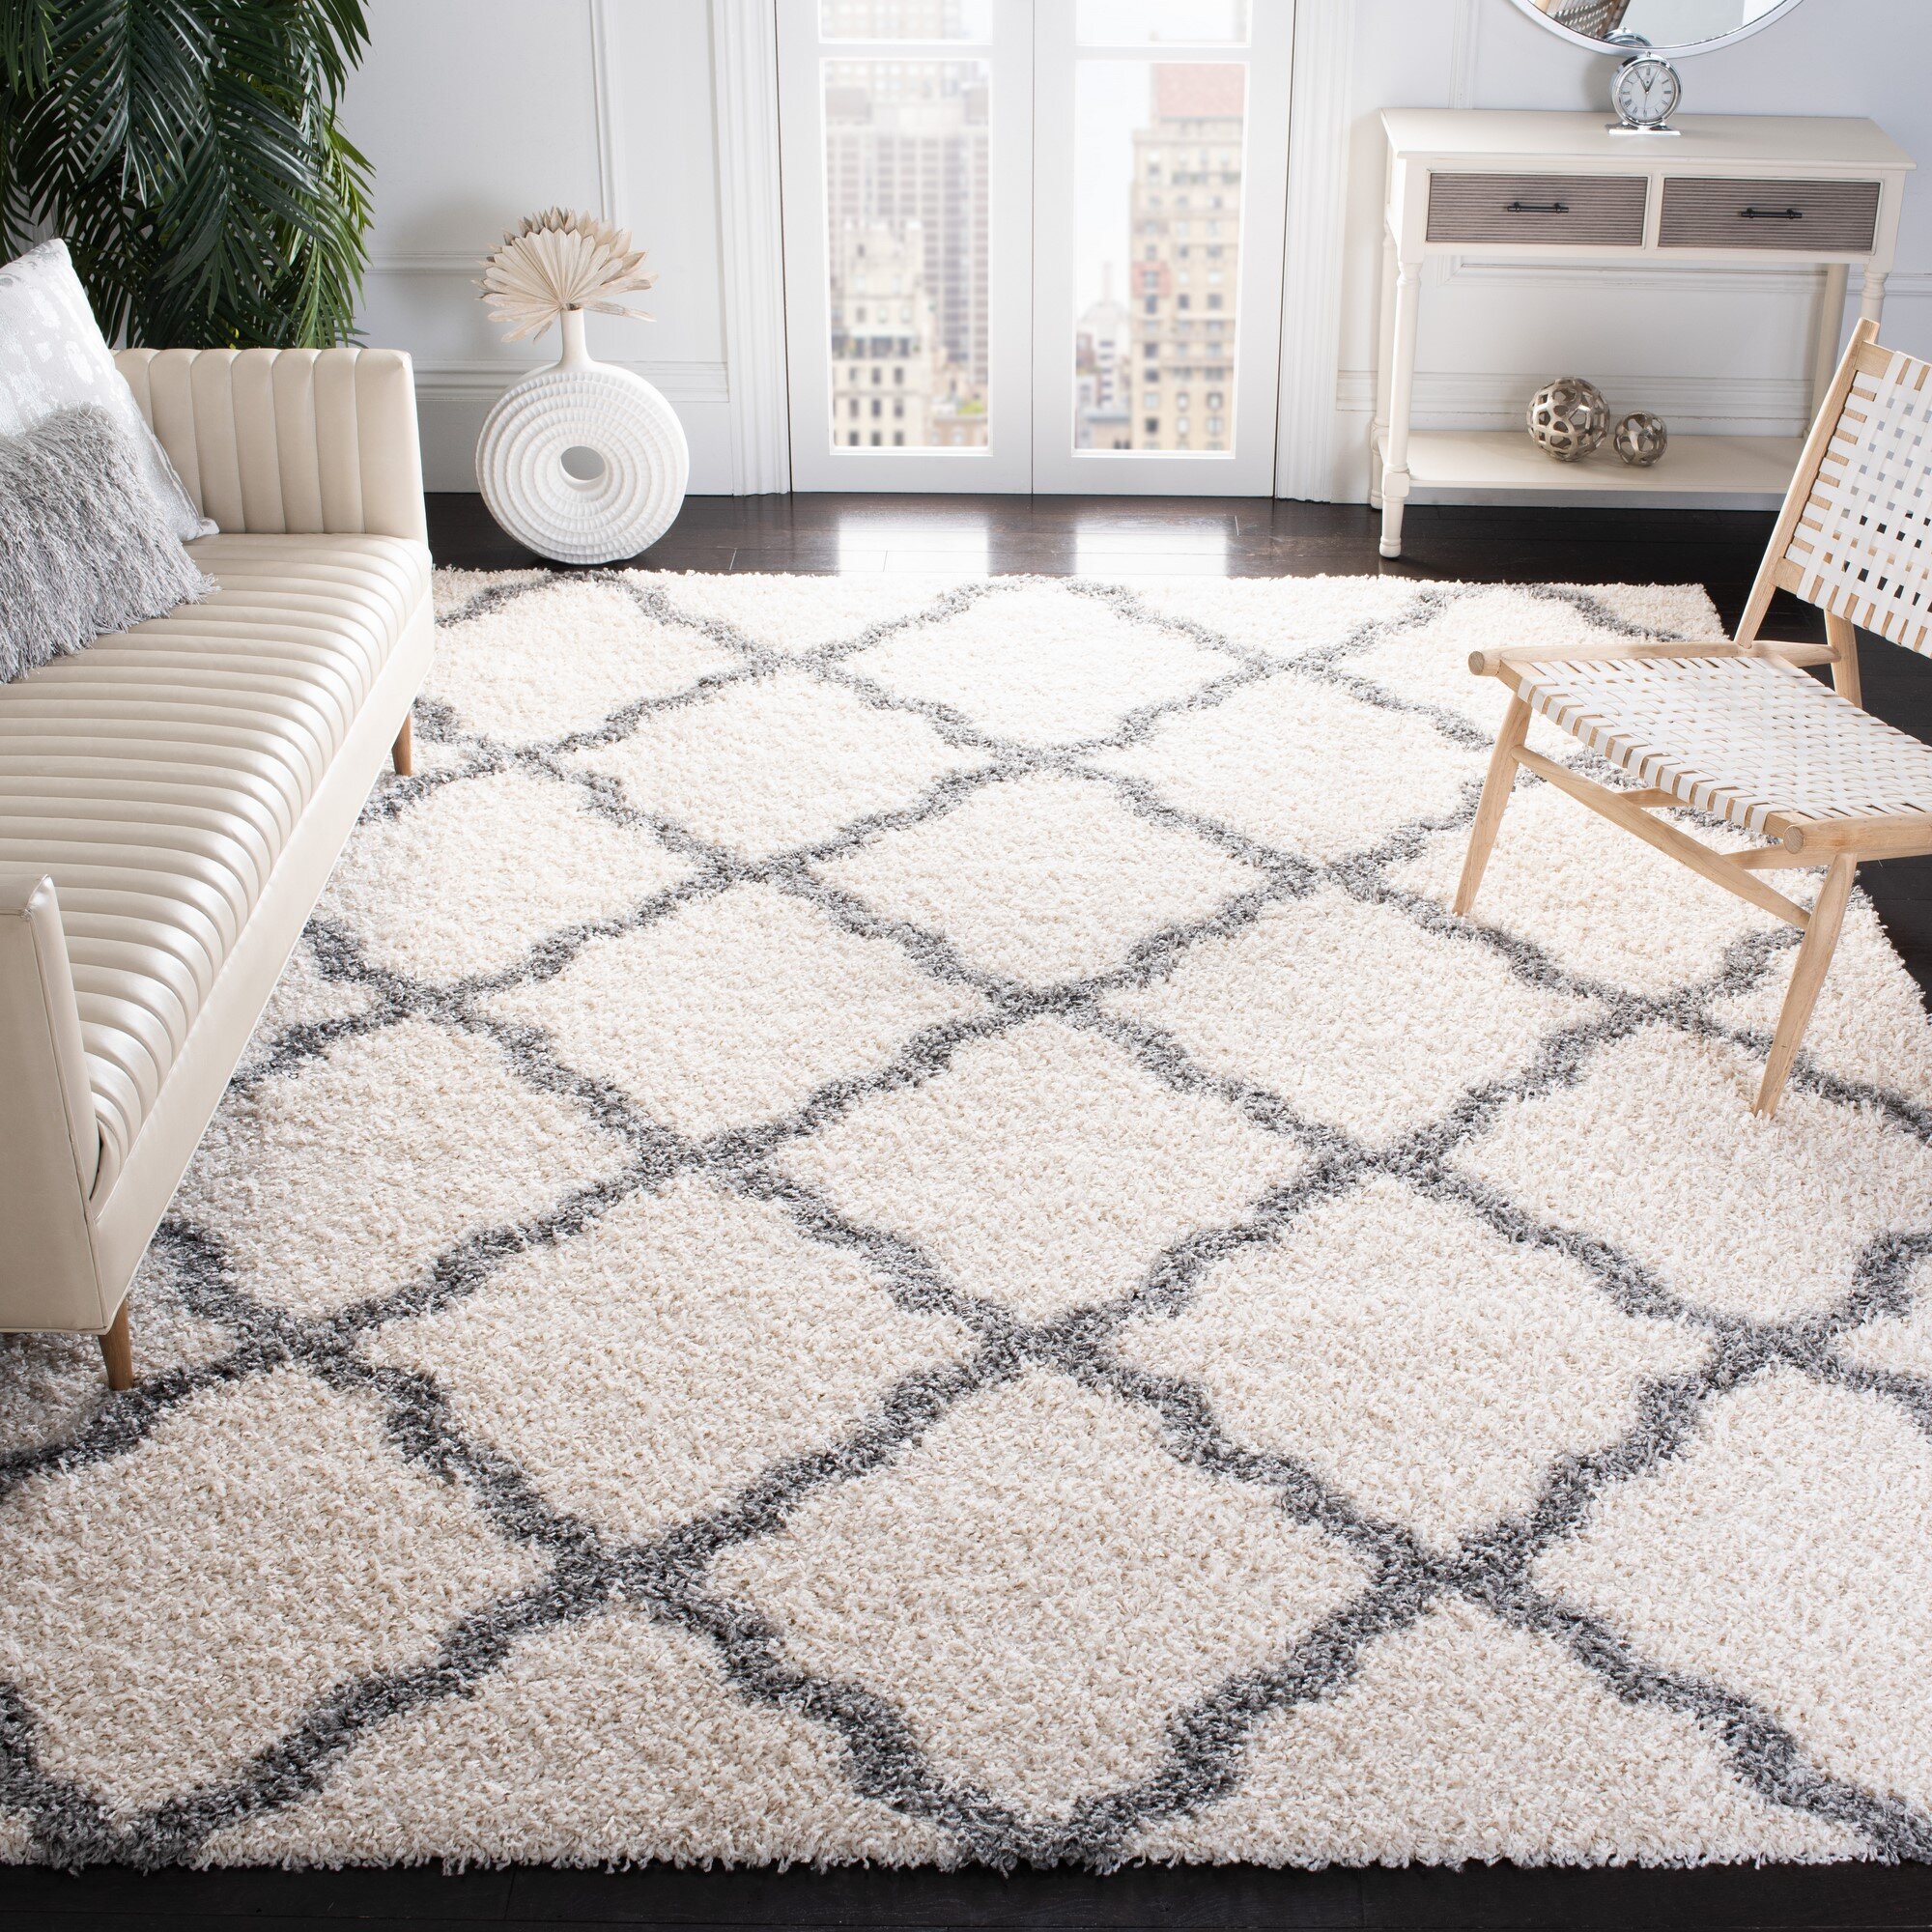 Kumar Rugs & Carpet Handmade Modern Non-Shedding Stain Resistant Living Room Bedroom Area Rug 5' x 8',White Navy Home 